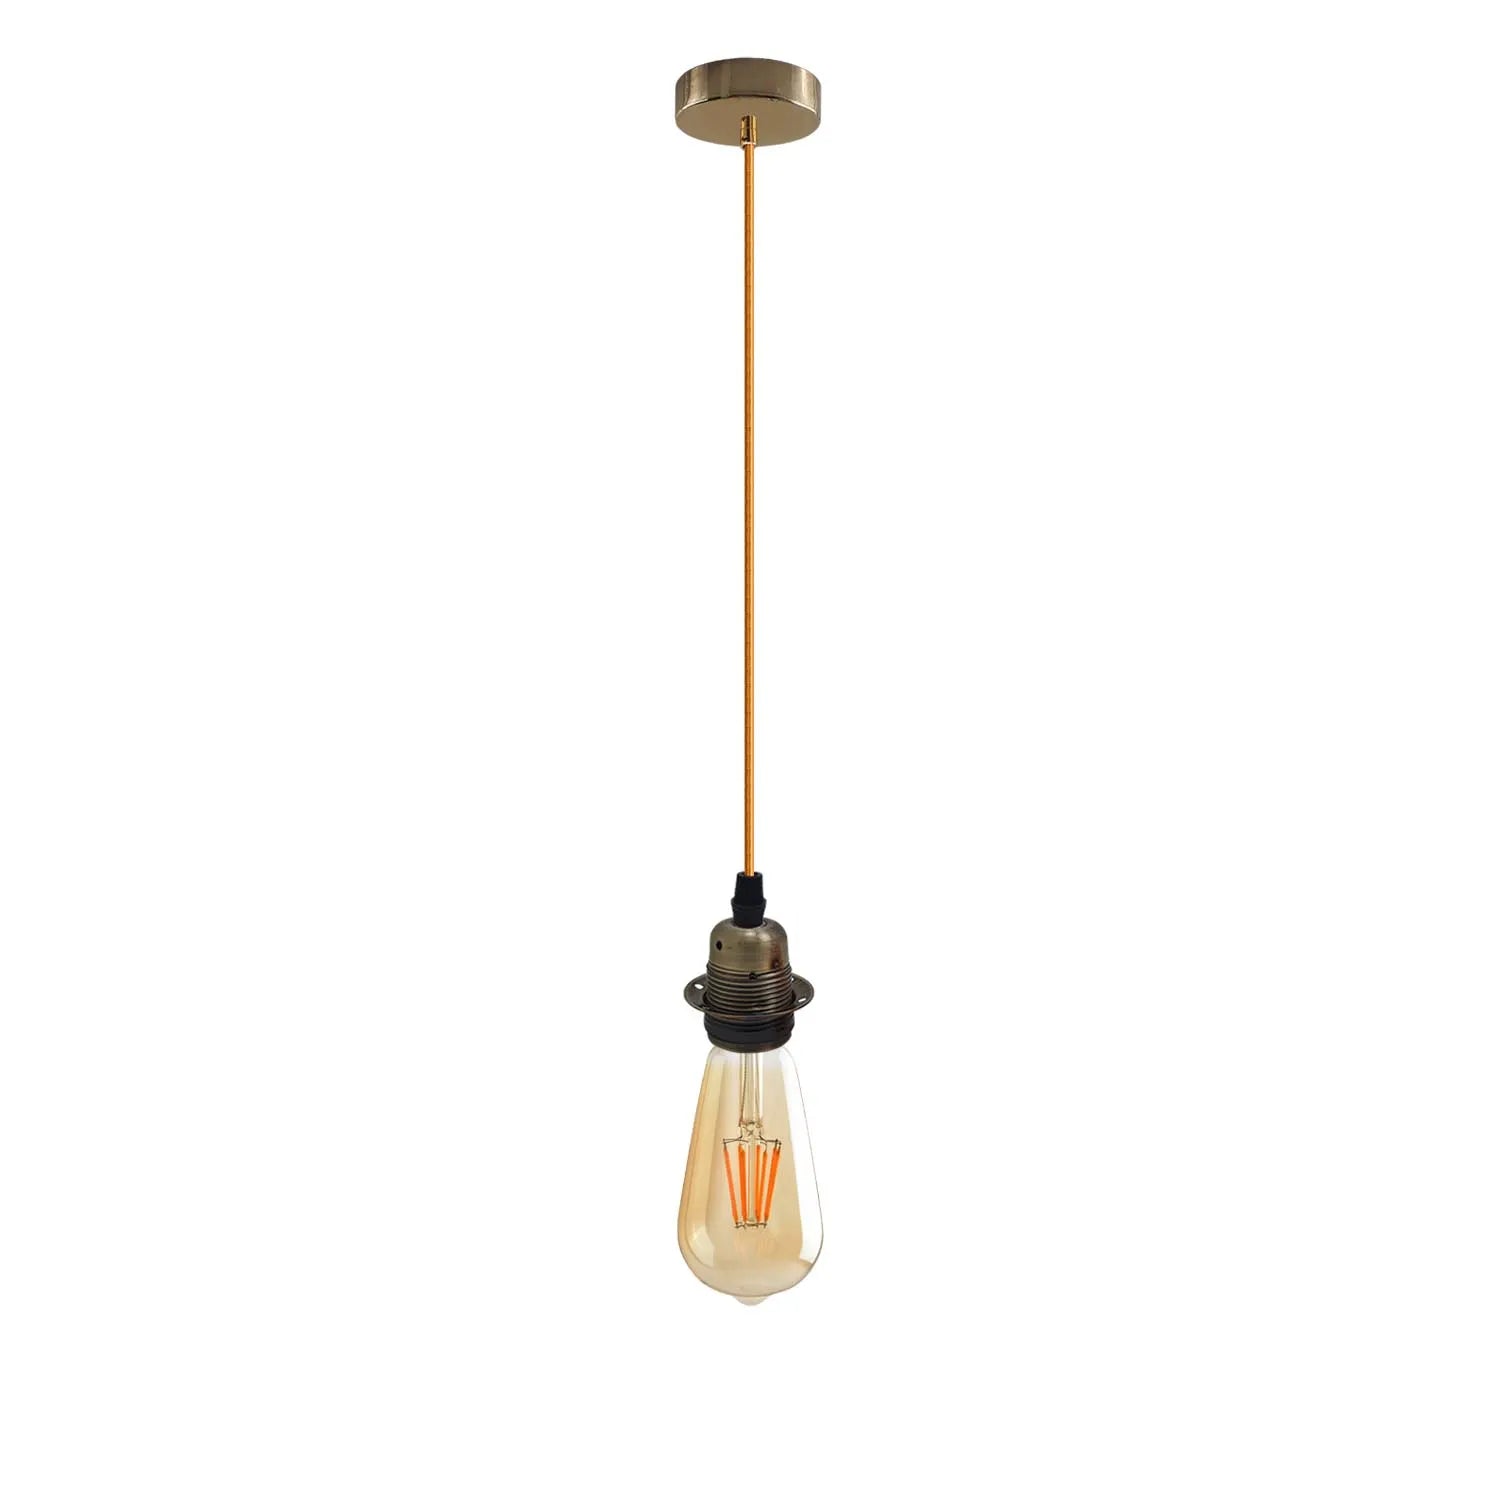 Fabric Flex Hanging Pendant Light Lamp Holder FREE Bulb Fitting Lighting Kit~2336